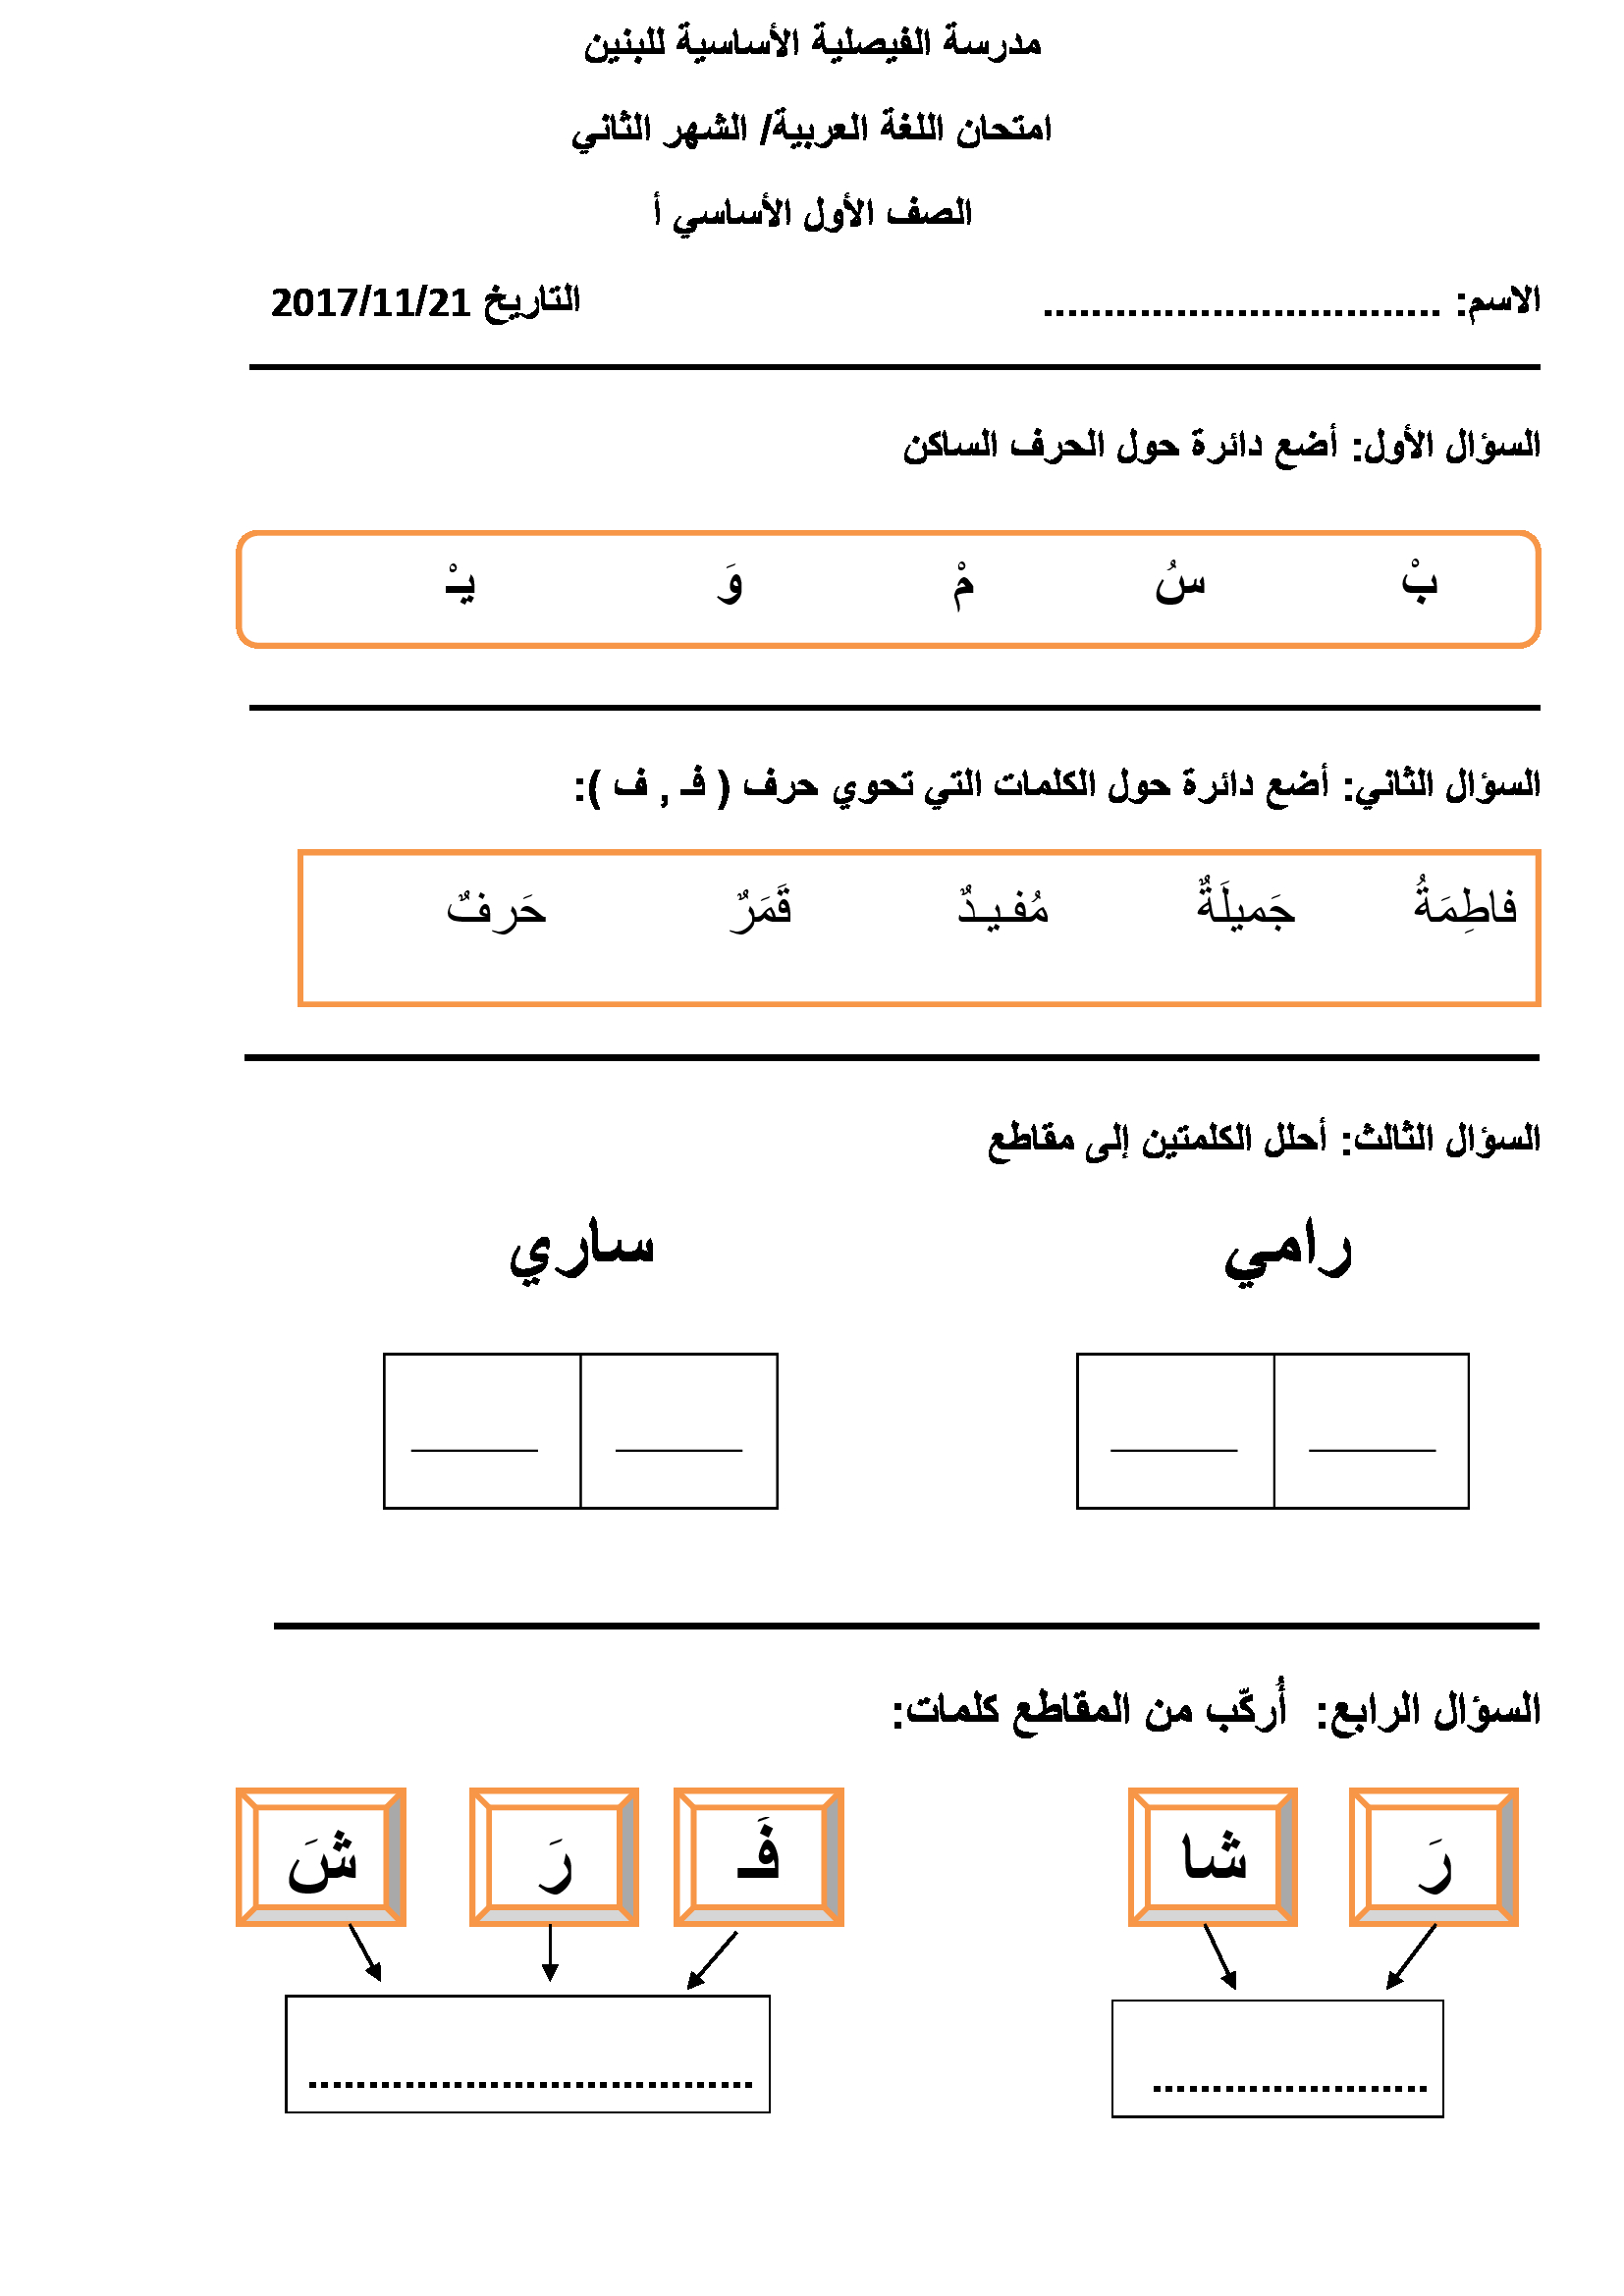 اختبار الشهر الثاني لمادة اللغة العربية للصف الاول الفصل الاول 2017